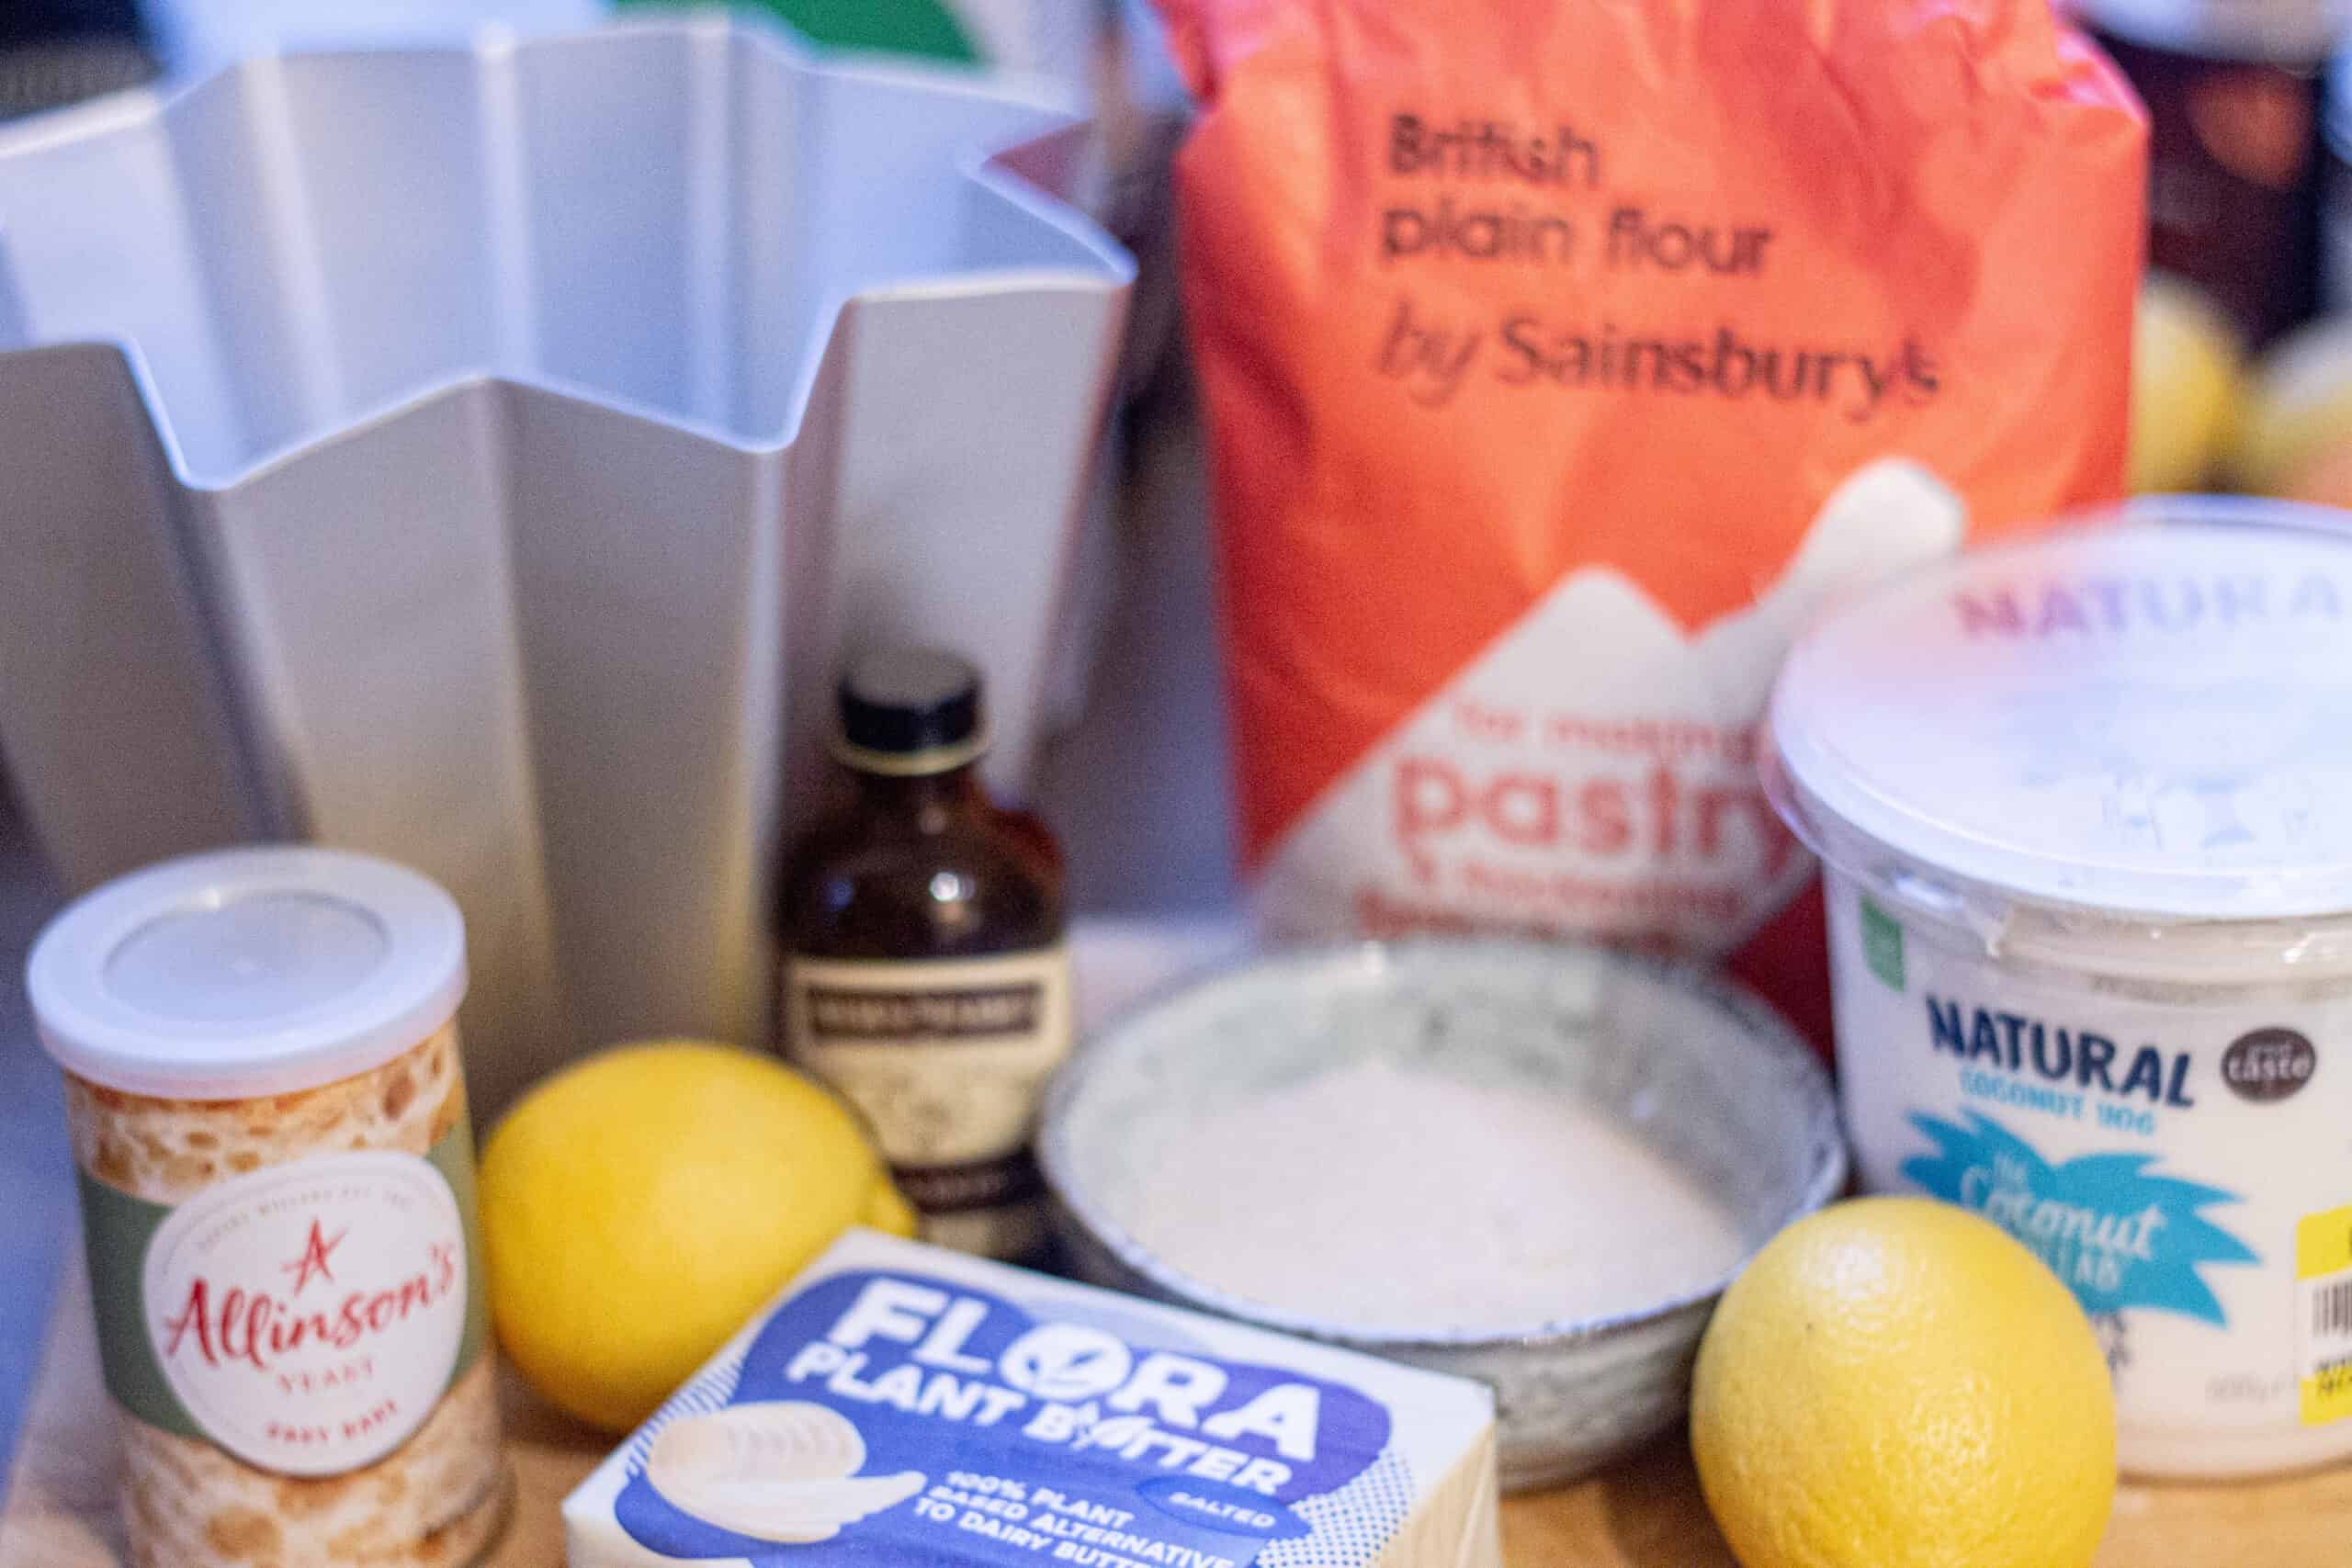 Ingredients for a vegan pandoro